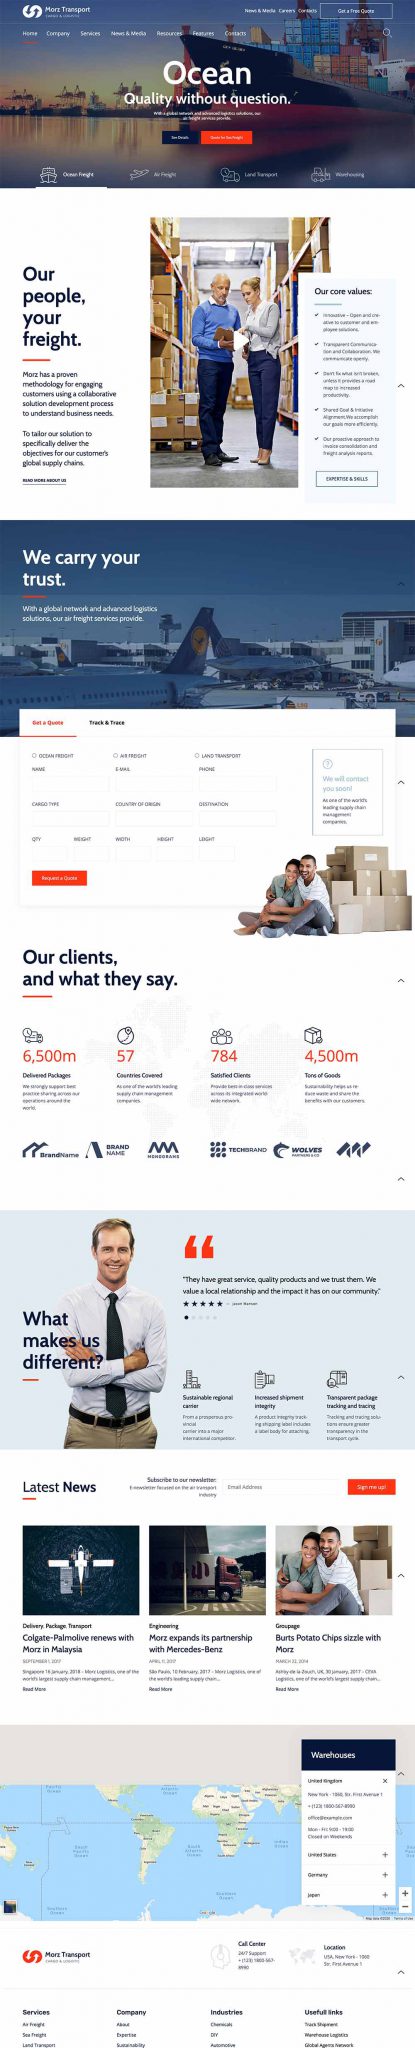 Thiết kế website đẹp cho doanh nghiệp vận chuyển